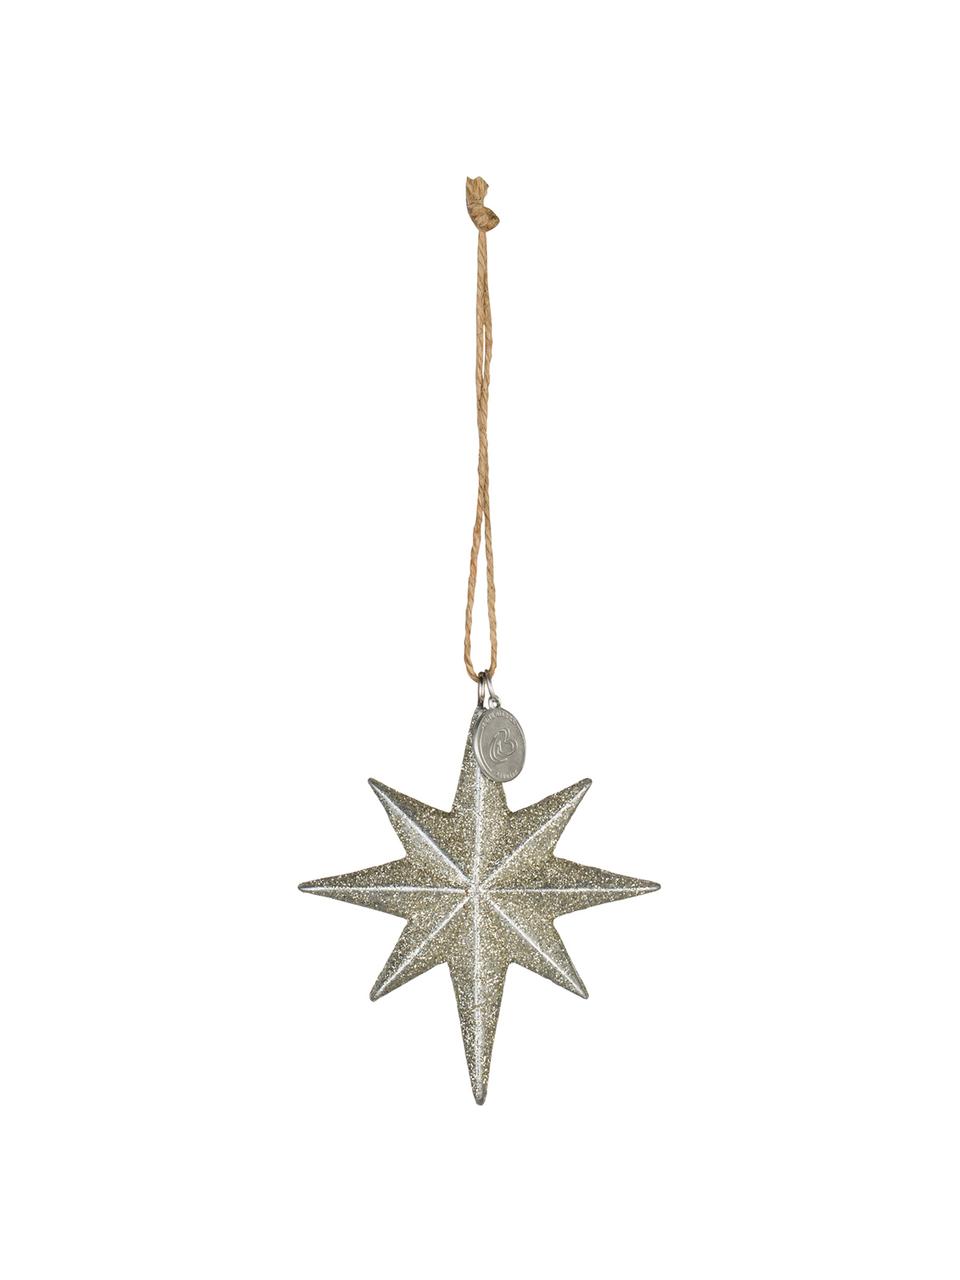 Handgefertigte Baumanhänger Serafina Star, 2 Stück, Goldfarben, B 7 x H 8 cm